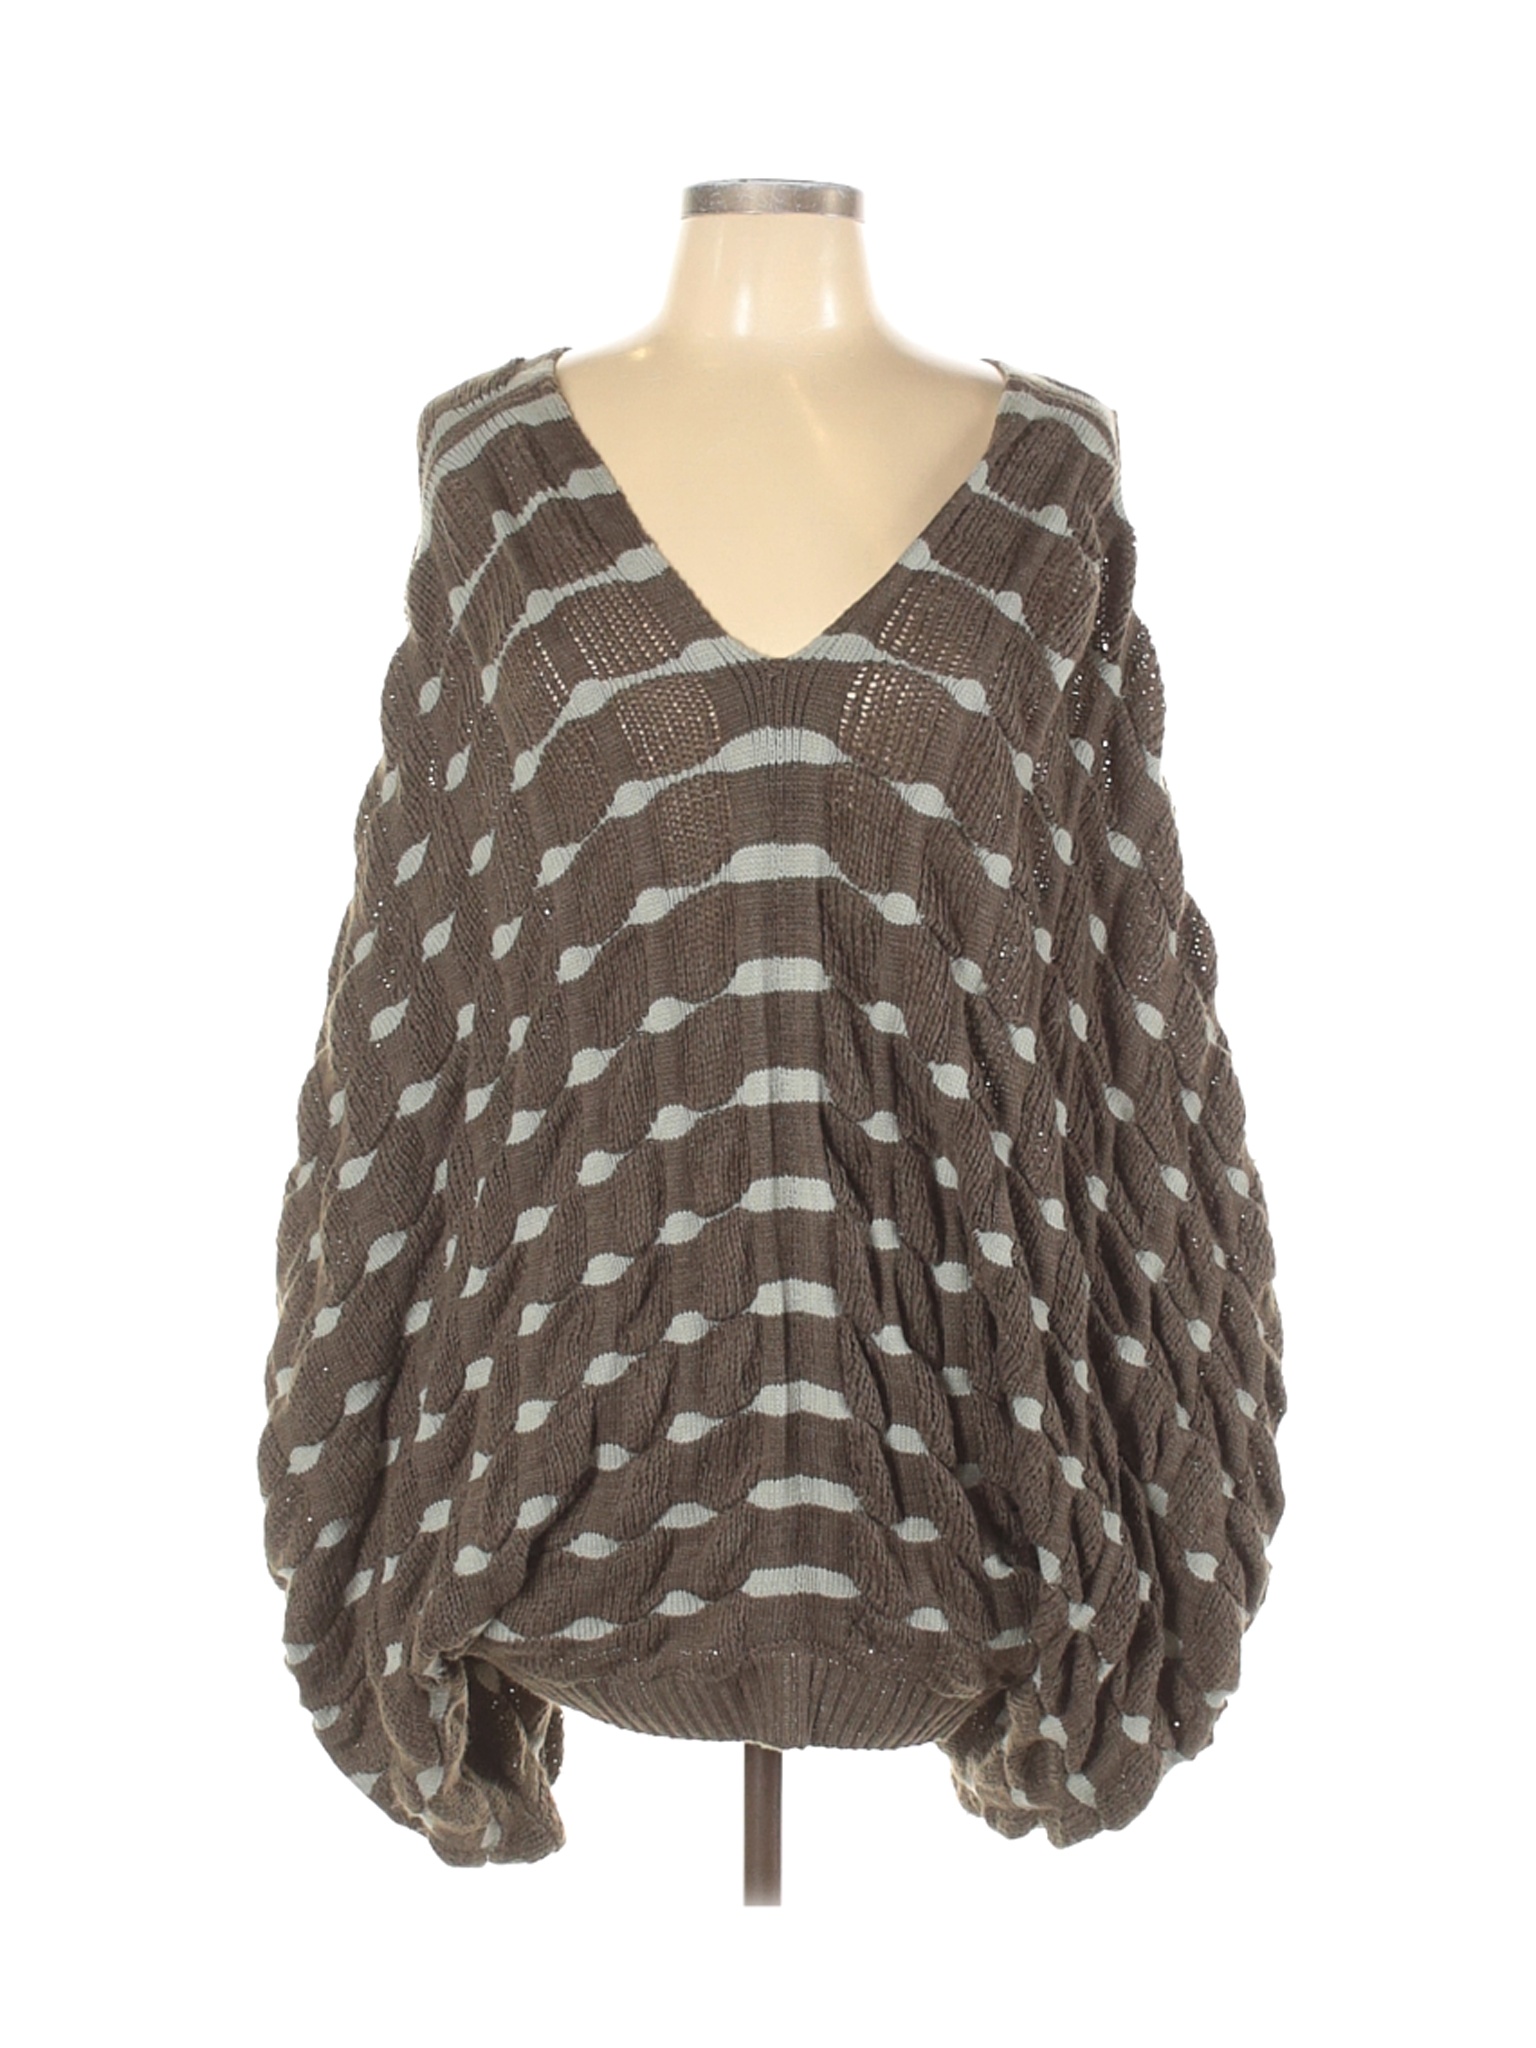 Gracia Women Brown Pullover Sweater L | eBay